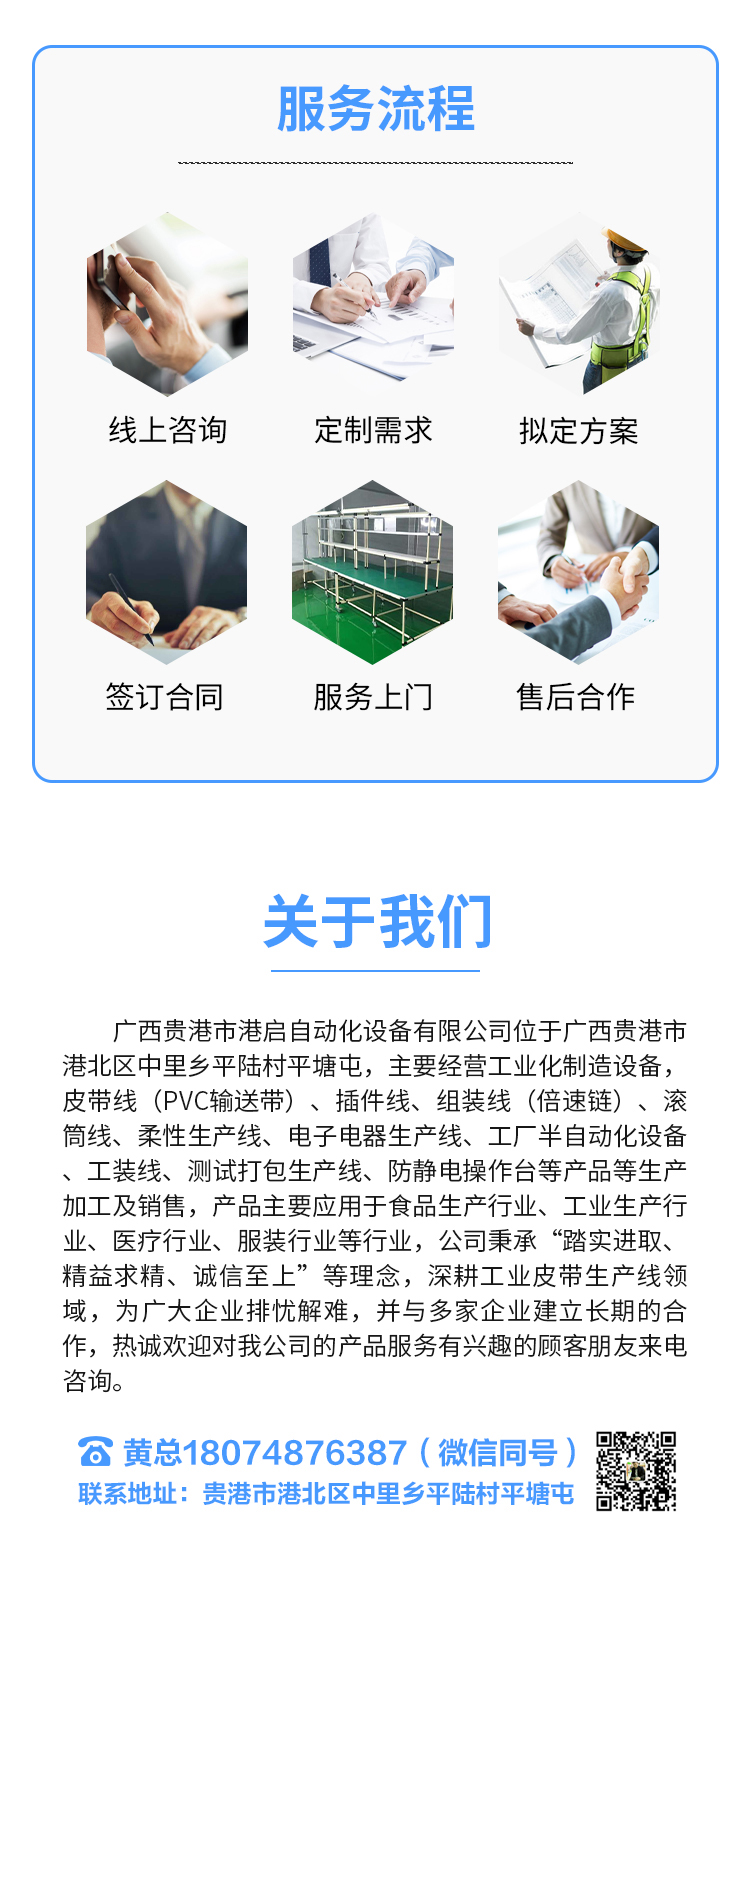 广西贵港市港启自动化设备有限公司(1)_04.jpg